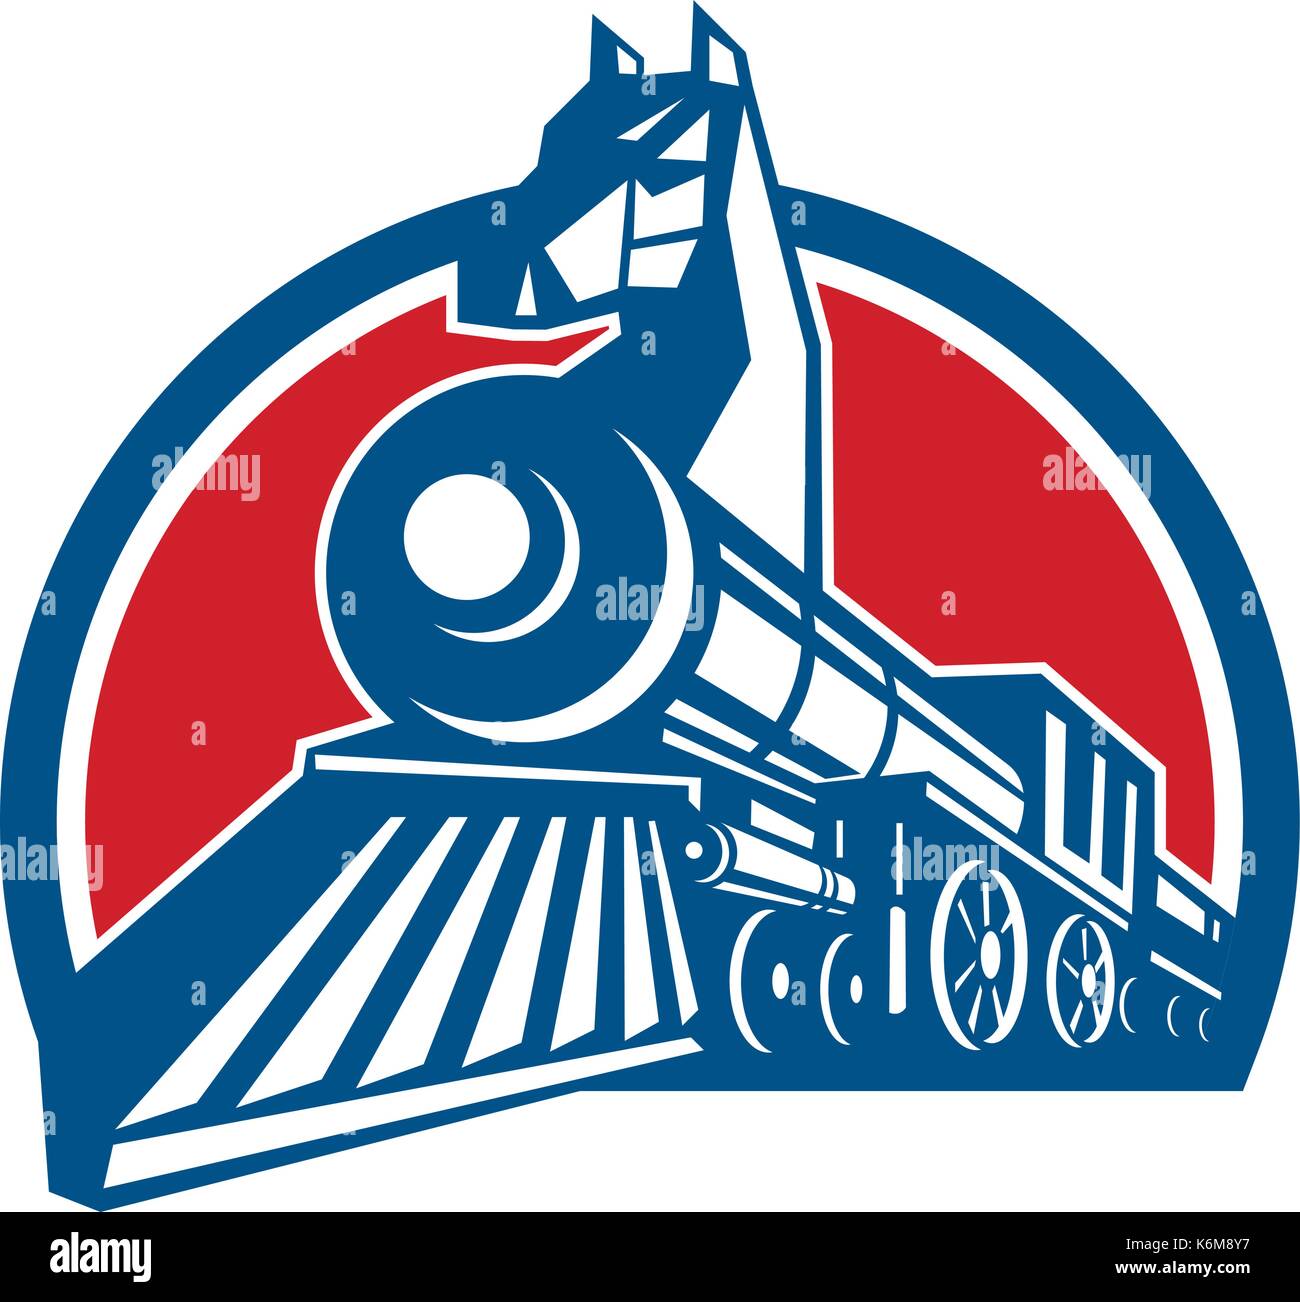 Retro style illustration d'un cheval de fer, un train à vapeur locomotive avec tête de cheval sur l'arc vu depuis un angle bas situé à l'intérieur de la moitié du cercle sur l'isola Illustration de Vecteur